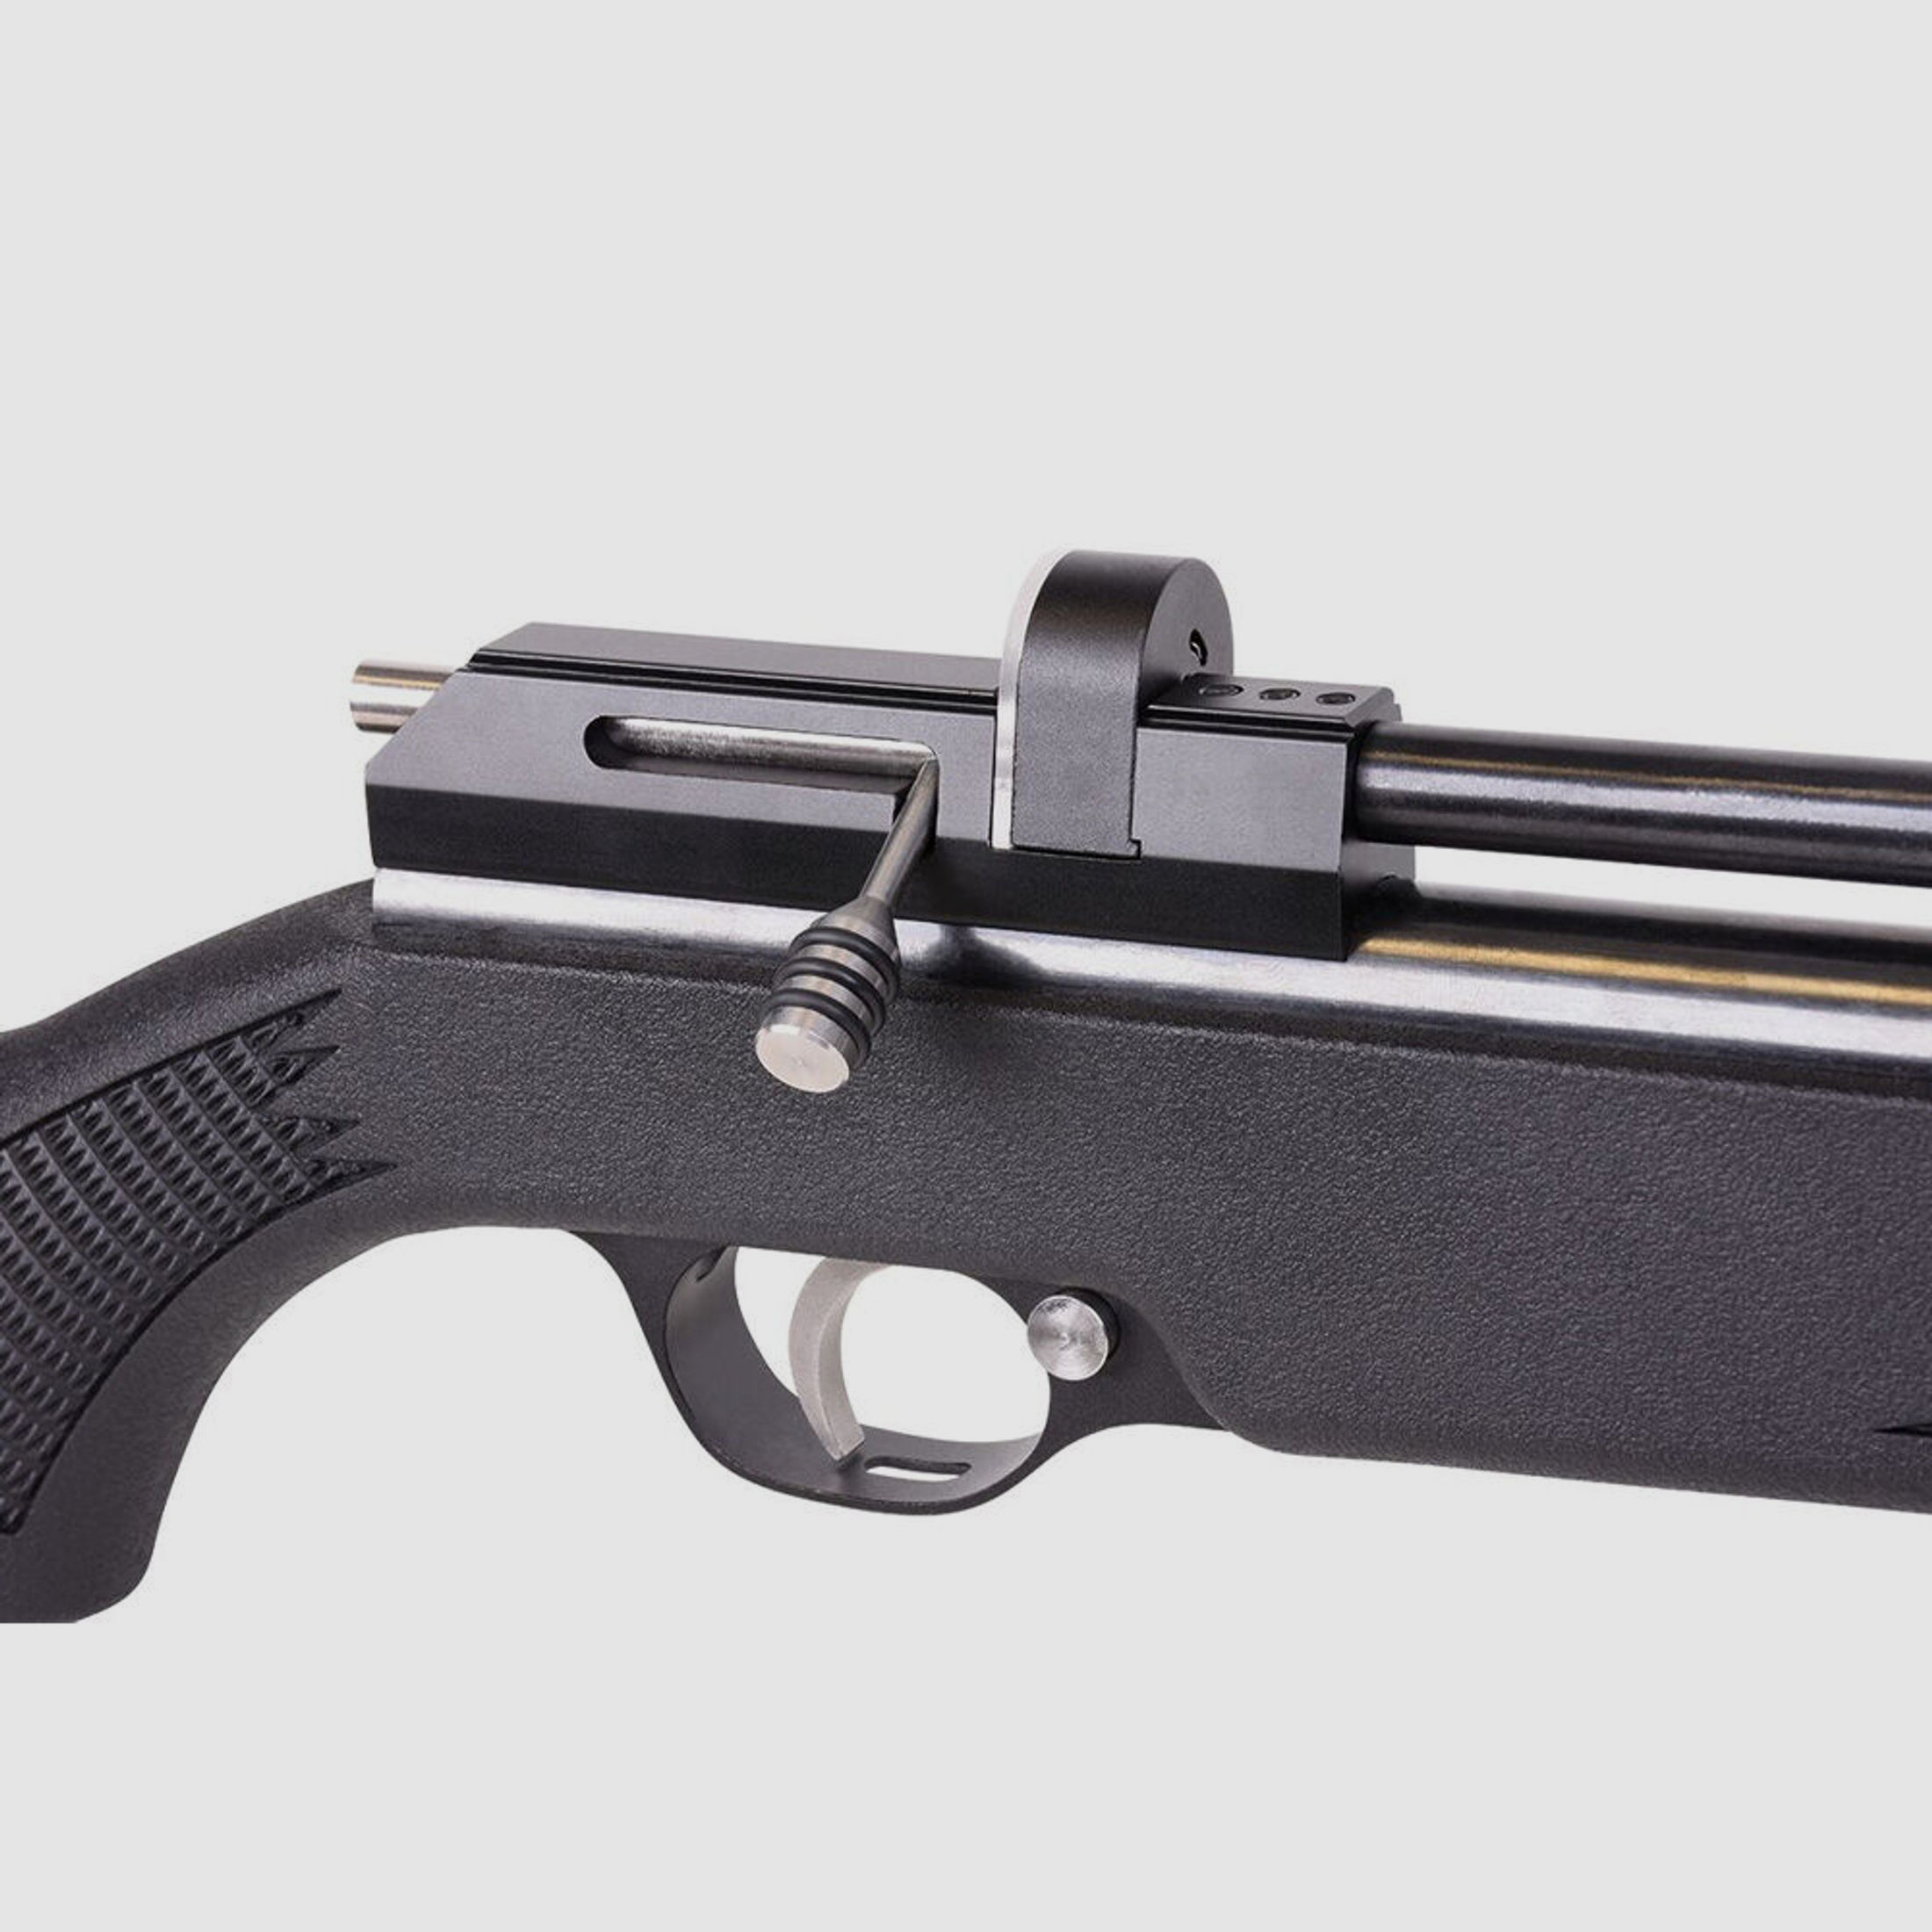 Diana Stormrider Black Pressluftgewehr 4,5mm Diabolos - Futteral Set